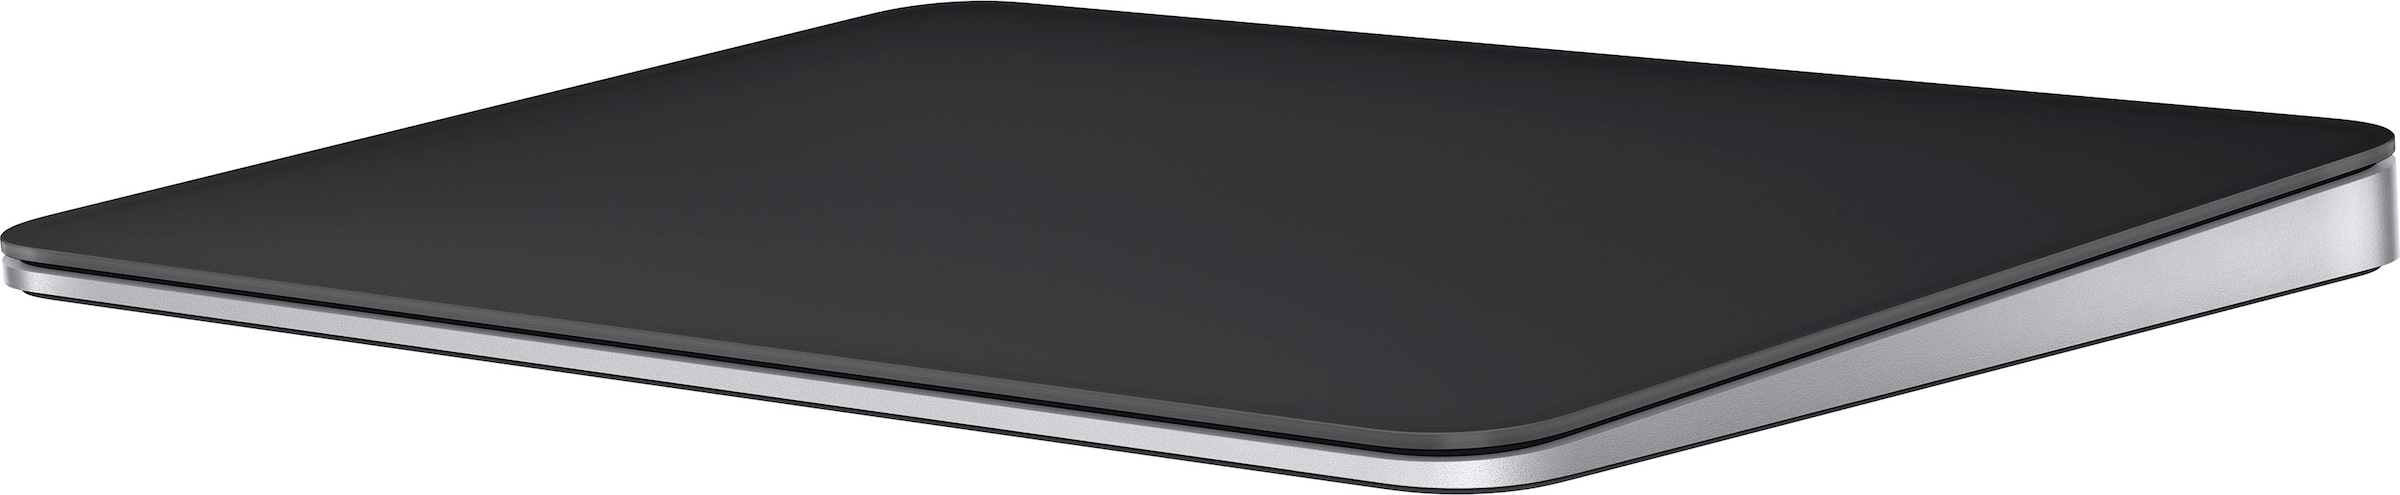 Apple-Tastatur »Magic Trackpad«, (Touchpad)